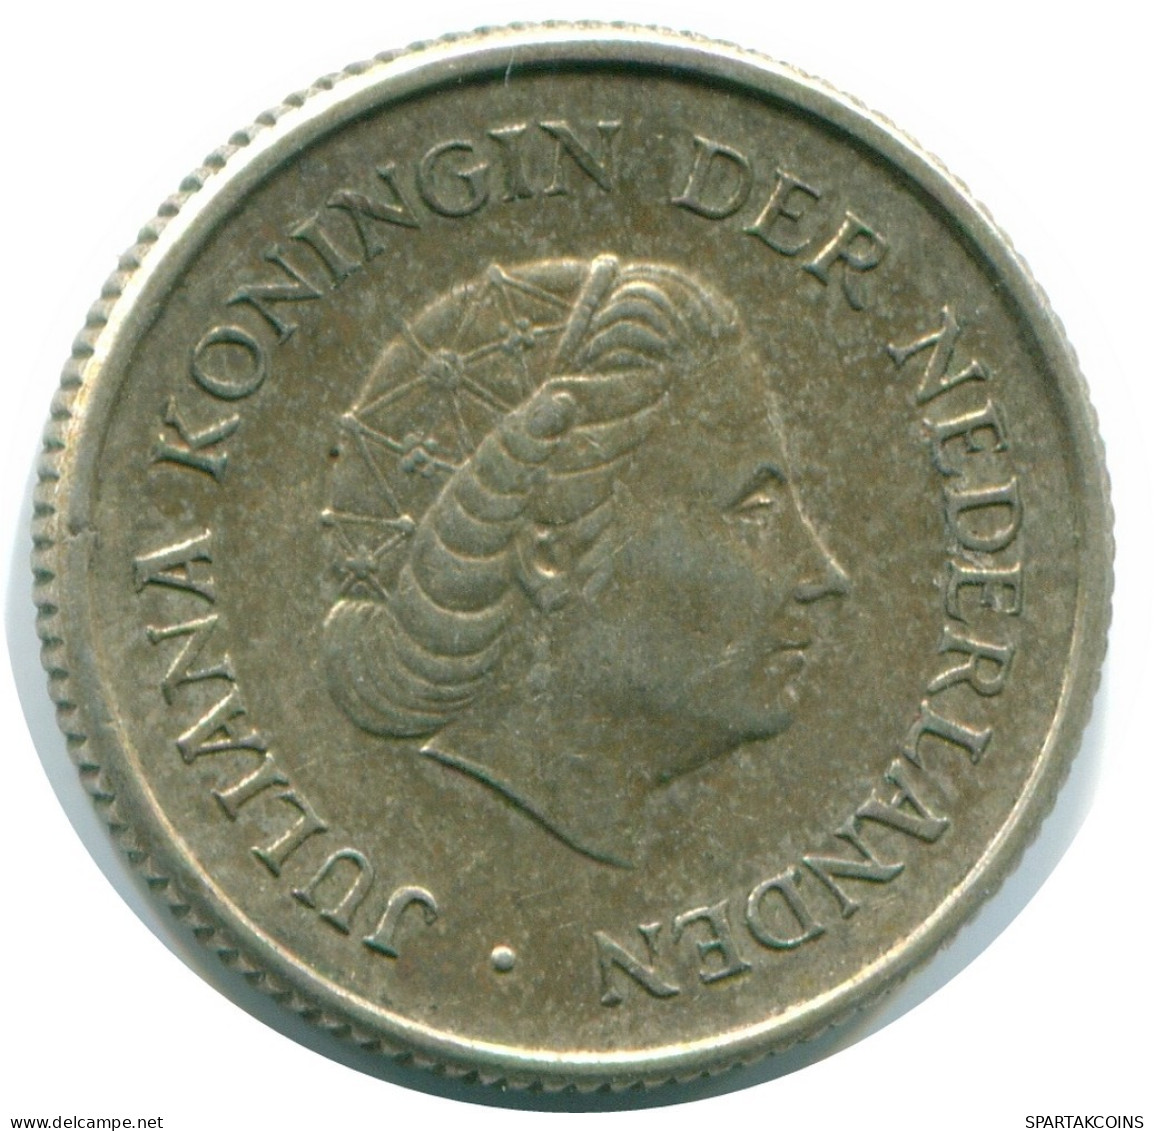 1/4 GULDEN 1967 NIEDERLÄNDISCHE ANTILLEN SILBER Koloniale Münze #NL11529.4.D.A - Antillas Neerlandesas